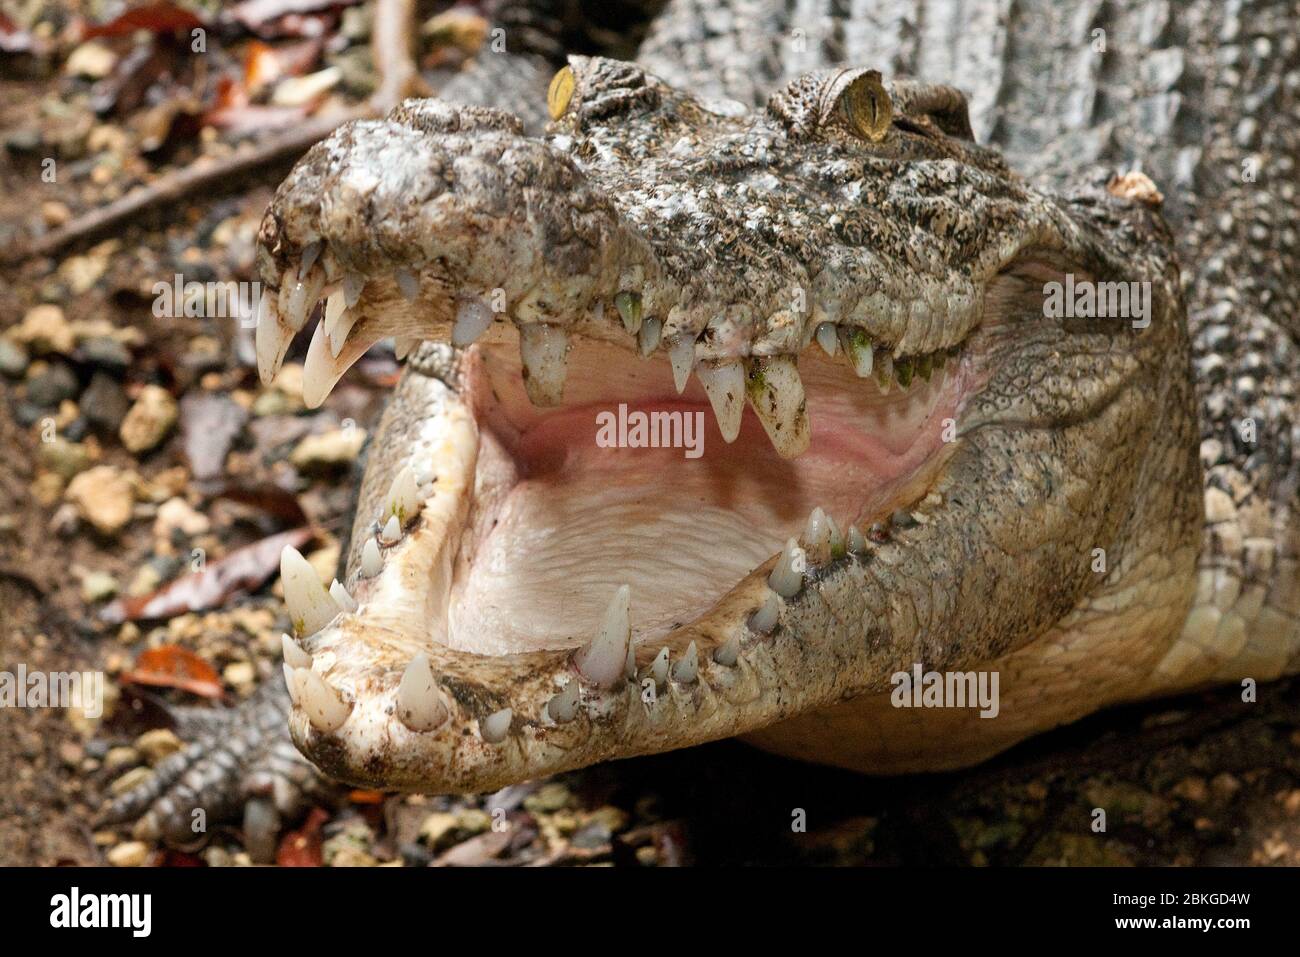 Leistenkrokodil, Salzwasserkrokodil (Crocodylus porosus) faucht und reißt Maul auf, Australien Stock Photo